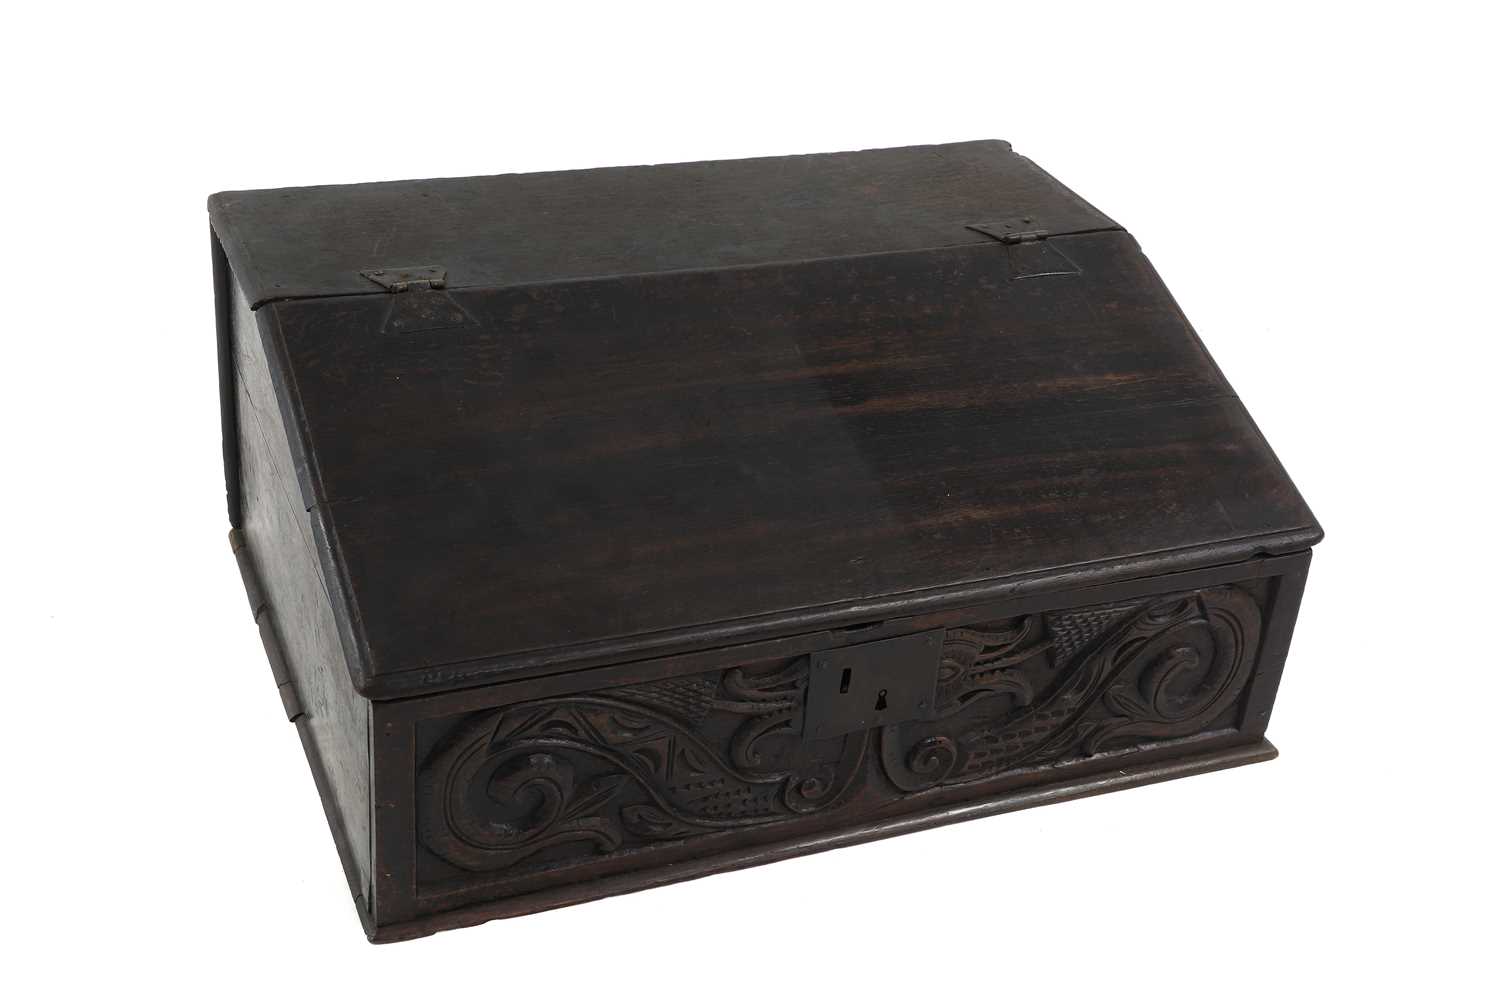 An oak oak bible box - Image 2 of 4